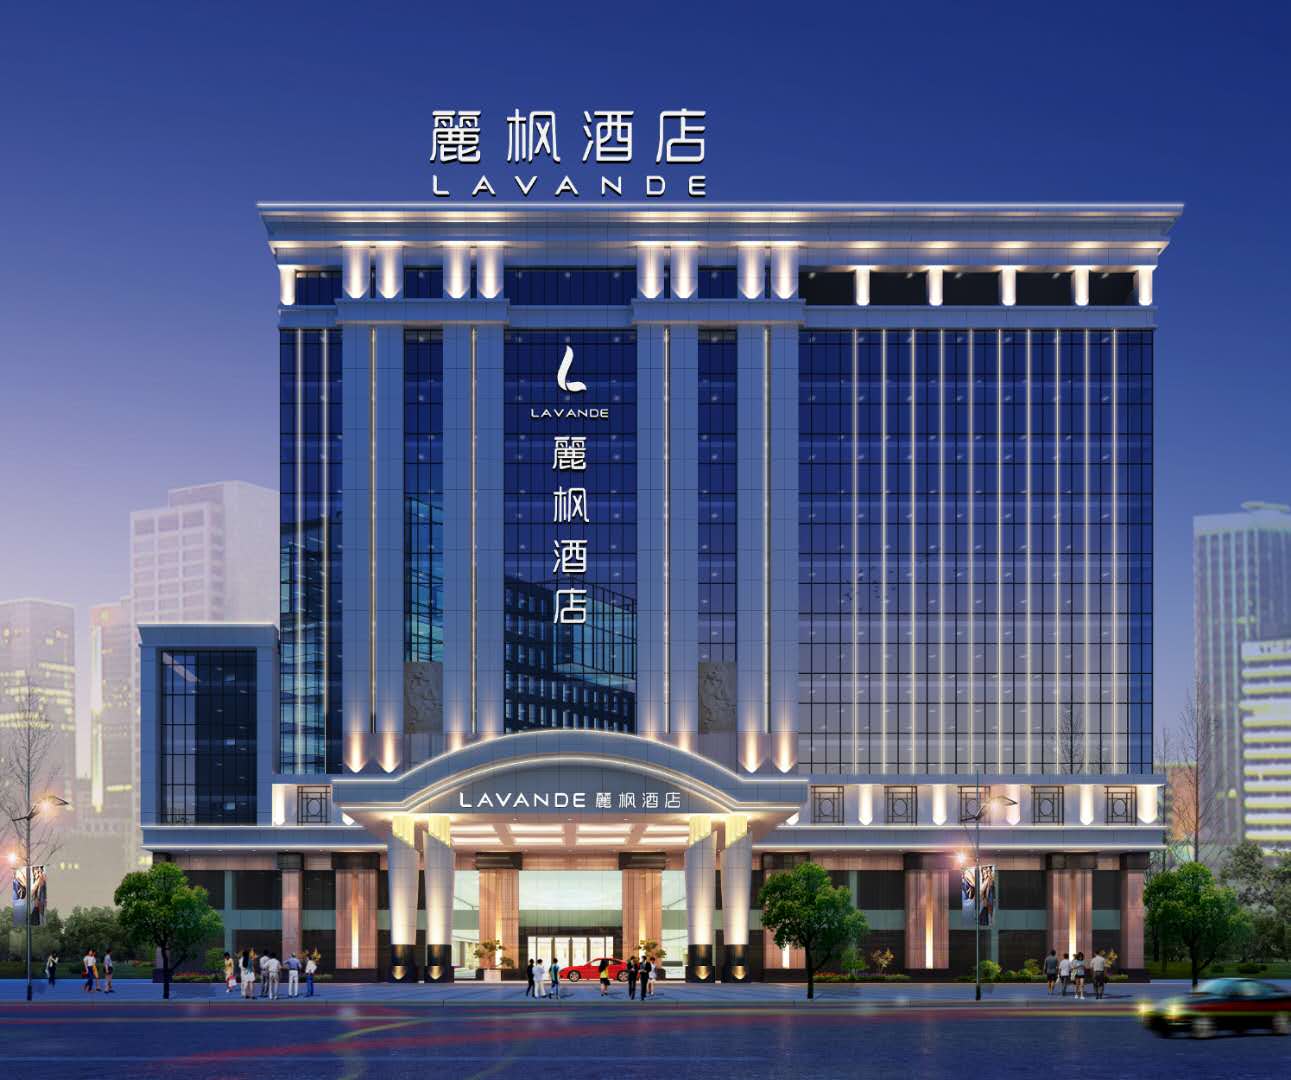 東莞東莞虎門美思威爾頓酒店 (Mels Weldon Dongguan Humen) - Agoda 提供行程前一刻網上即時優惠價格訂房服務